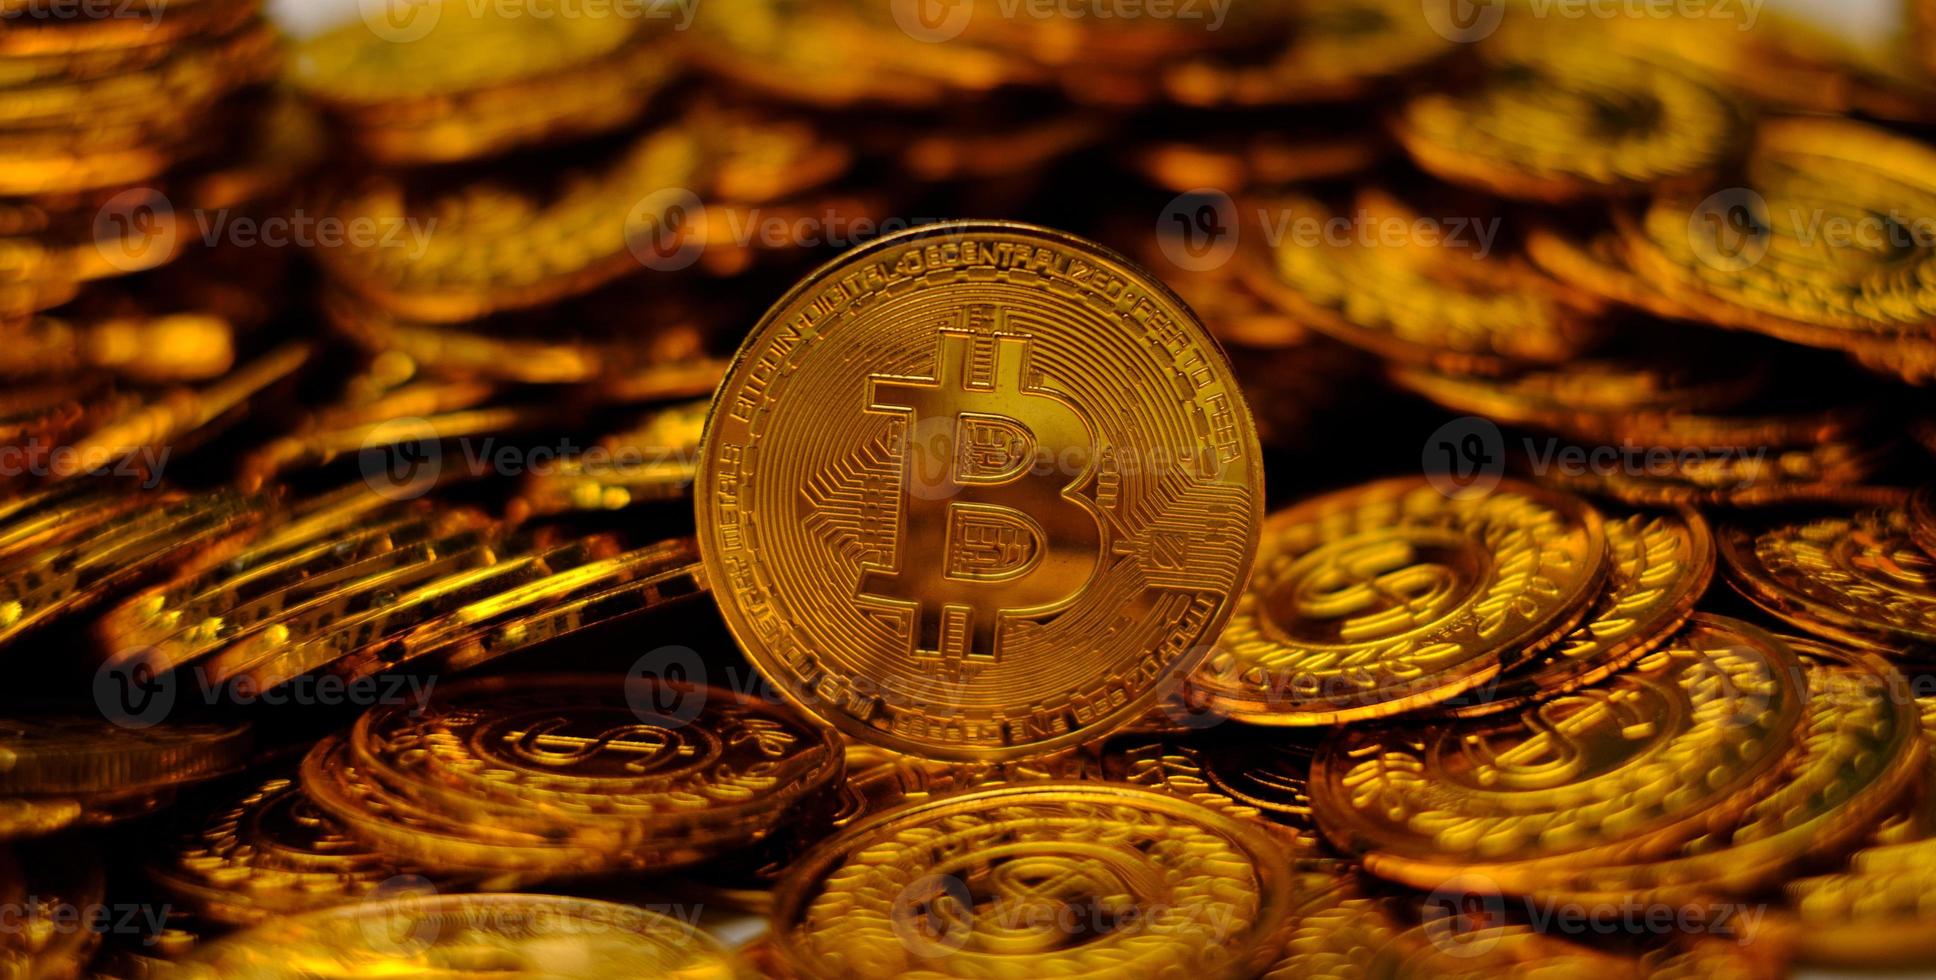 bitcoin kryptovaluta på hög guldmynt mycket foto